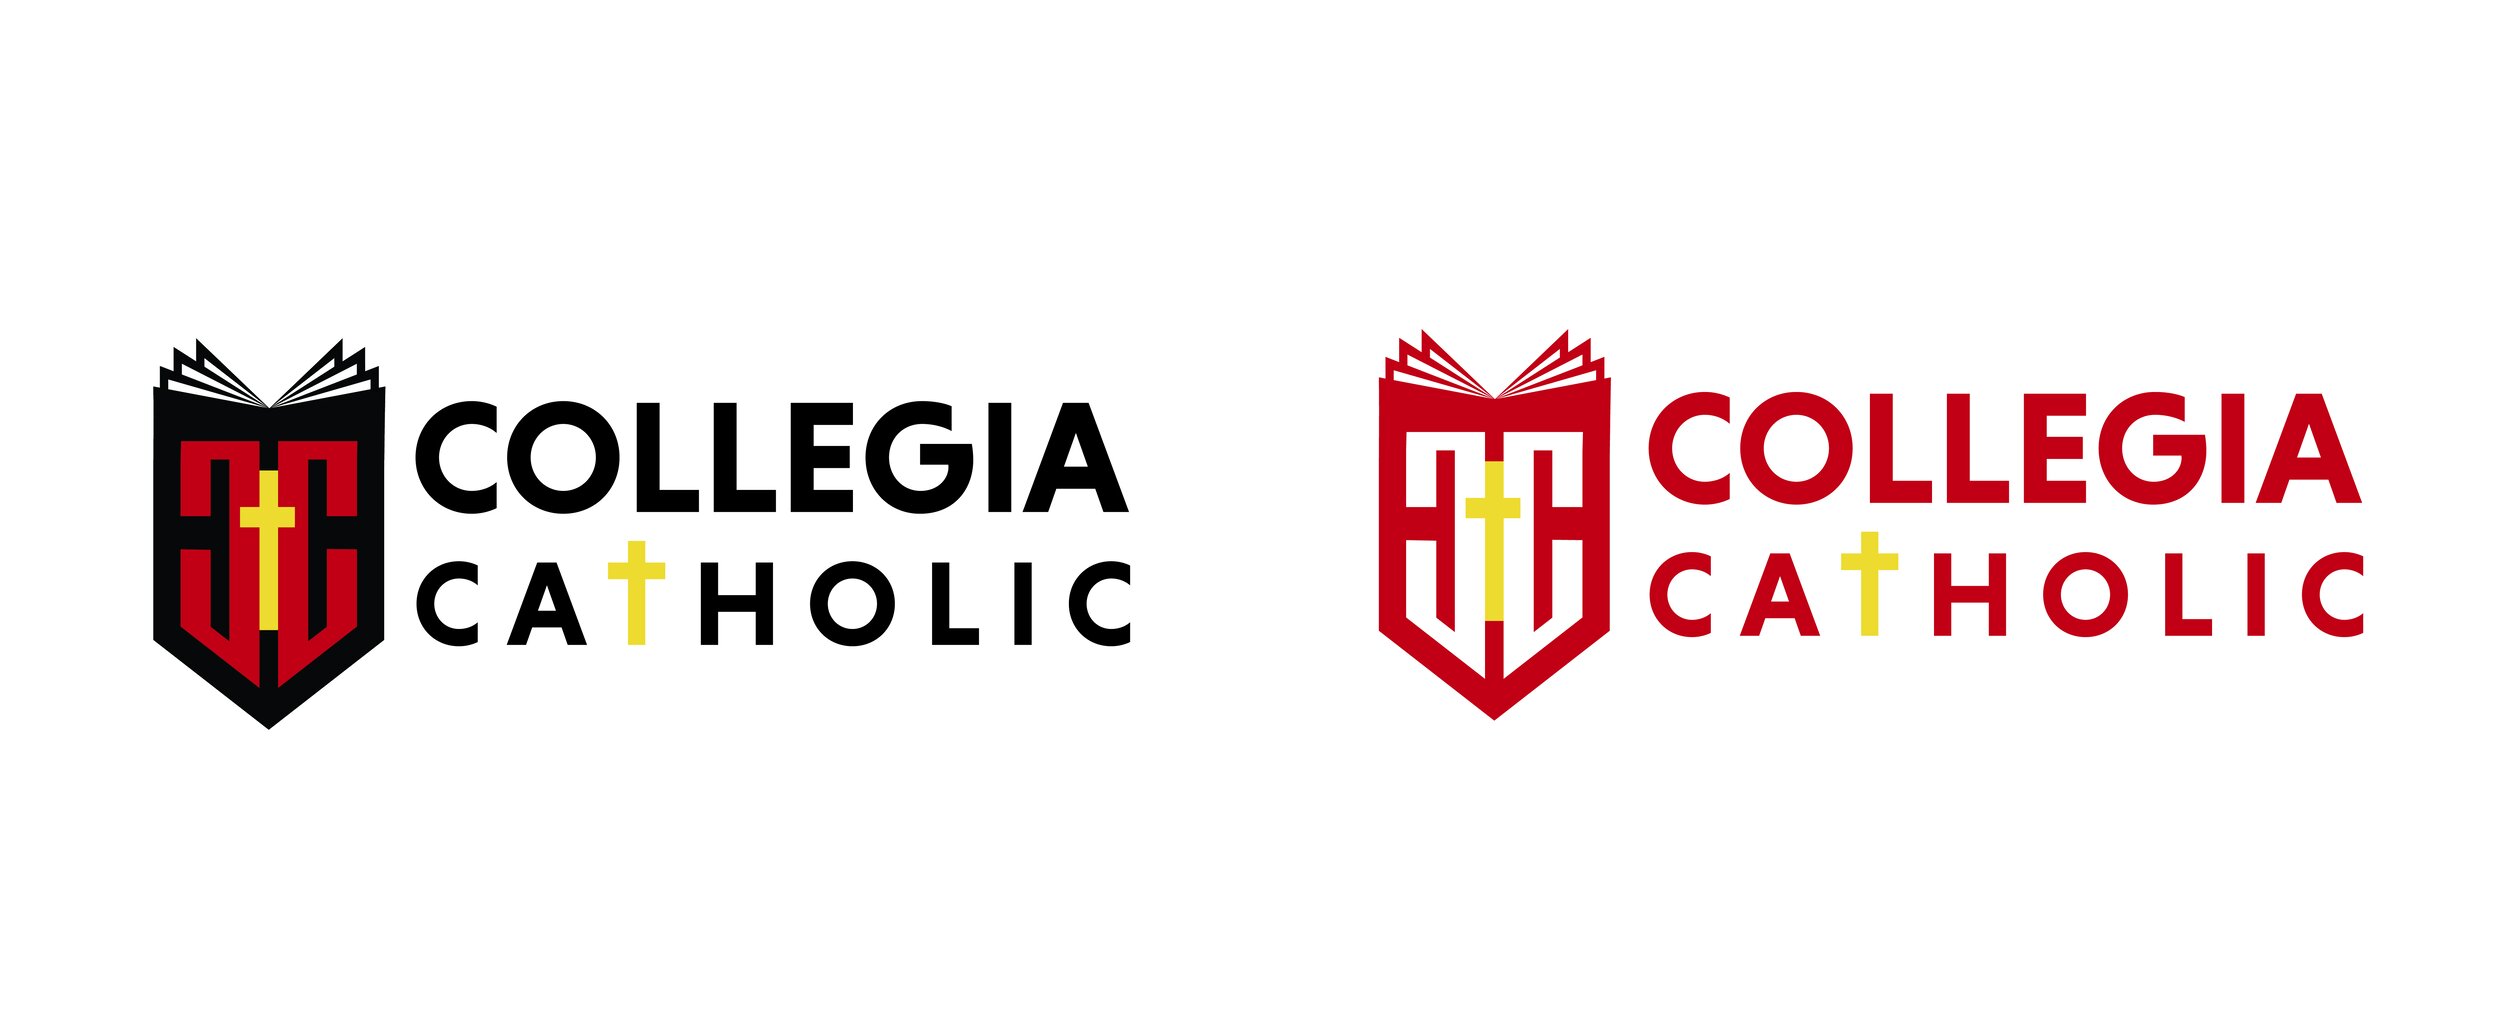 collegia_catholic-LOGO.jpg